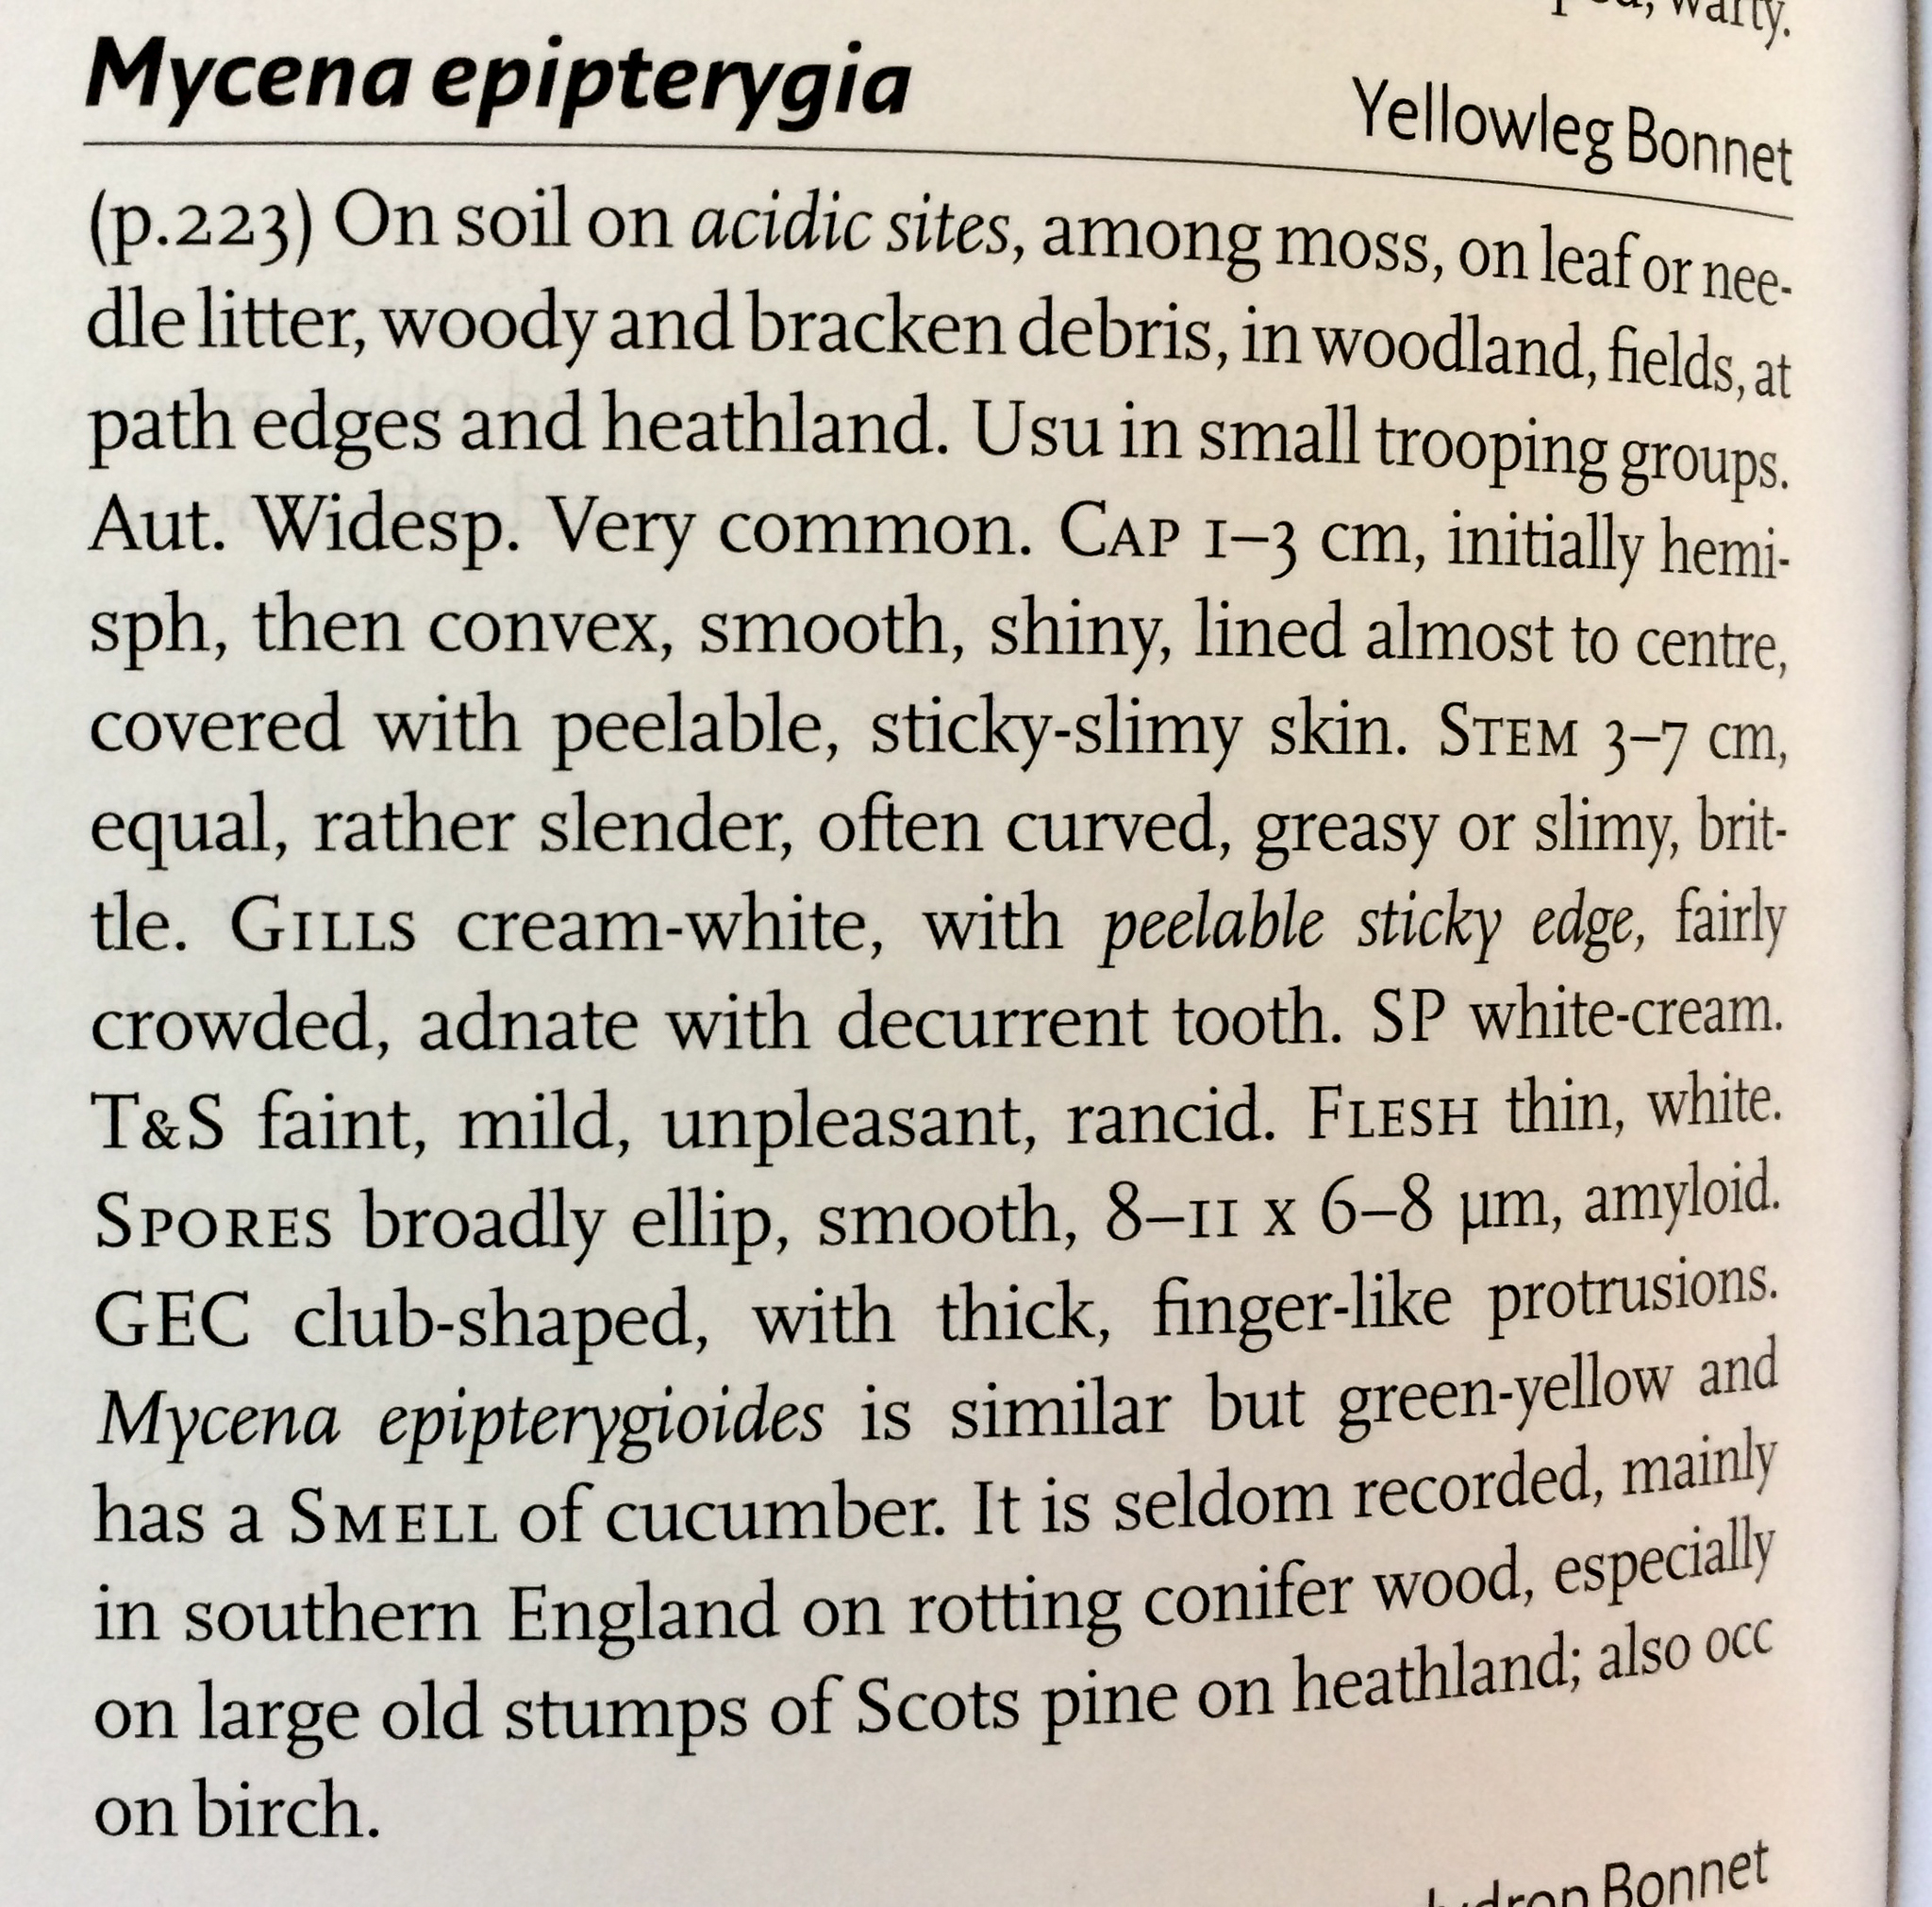 Mycena epipterygia - The Hall of Einar